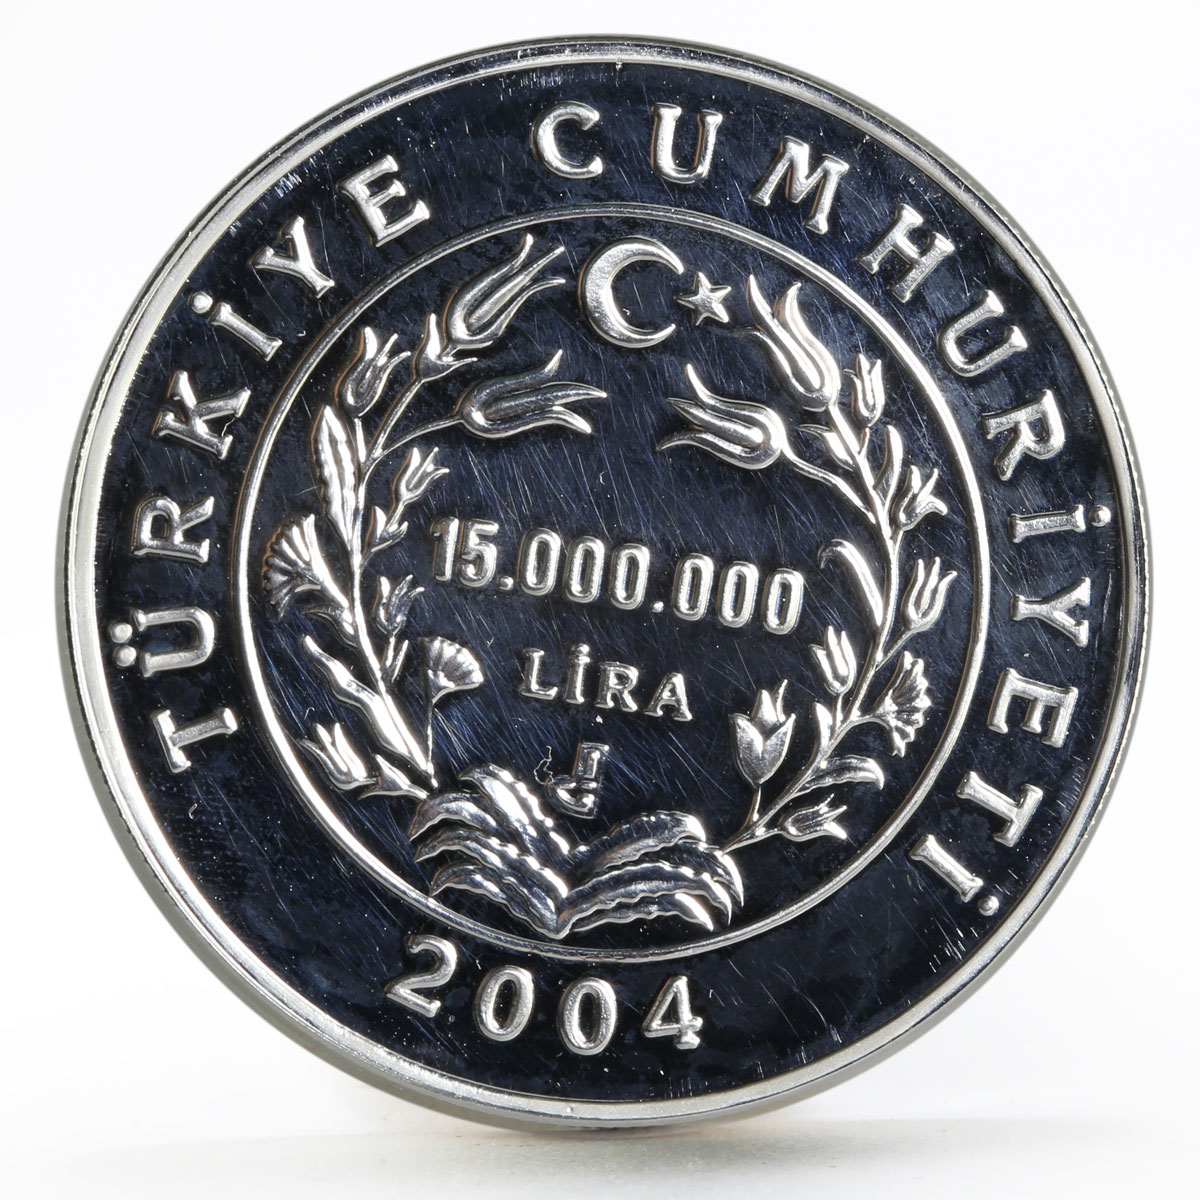 Turkey 15000000 lira Hazim Nikmet Ran Poet Turkish Poetry proof silver coin 2004